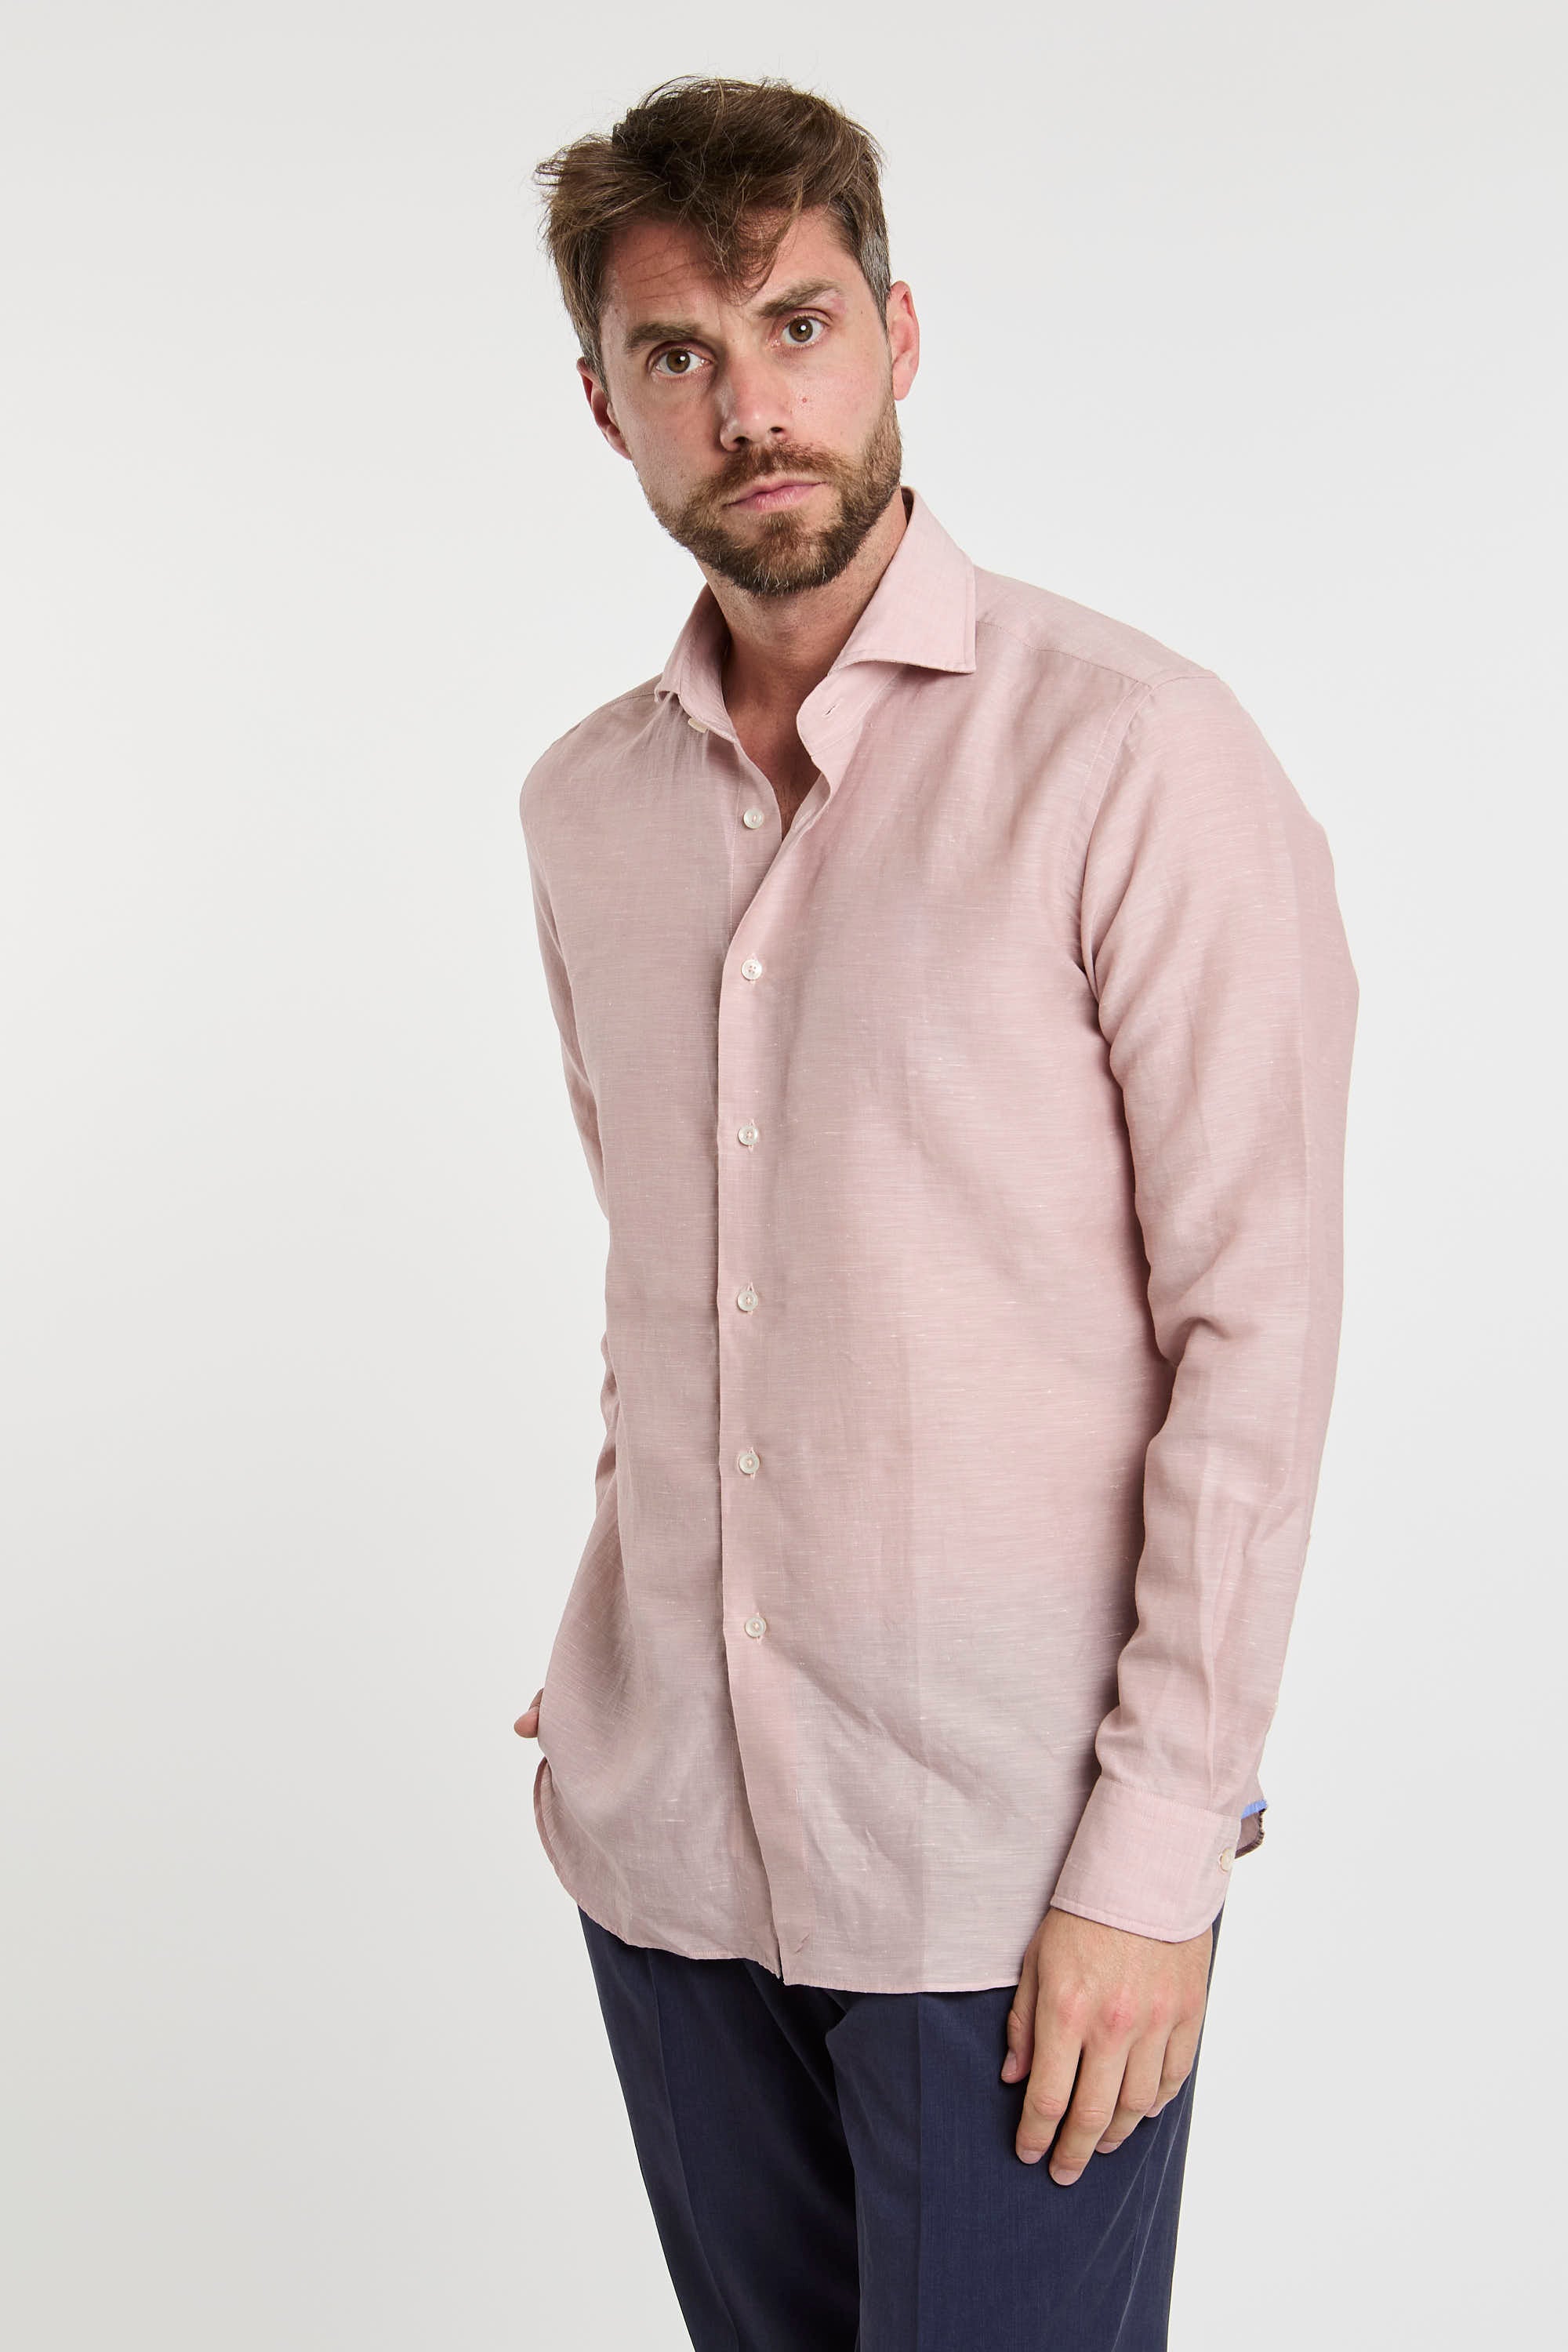 Xacus Wool and Linen Blend Pink Shirt-3